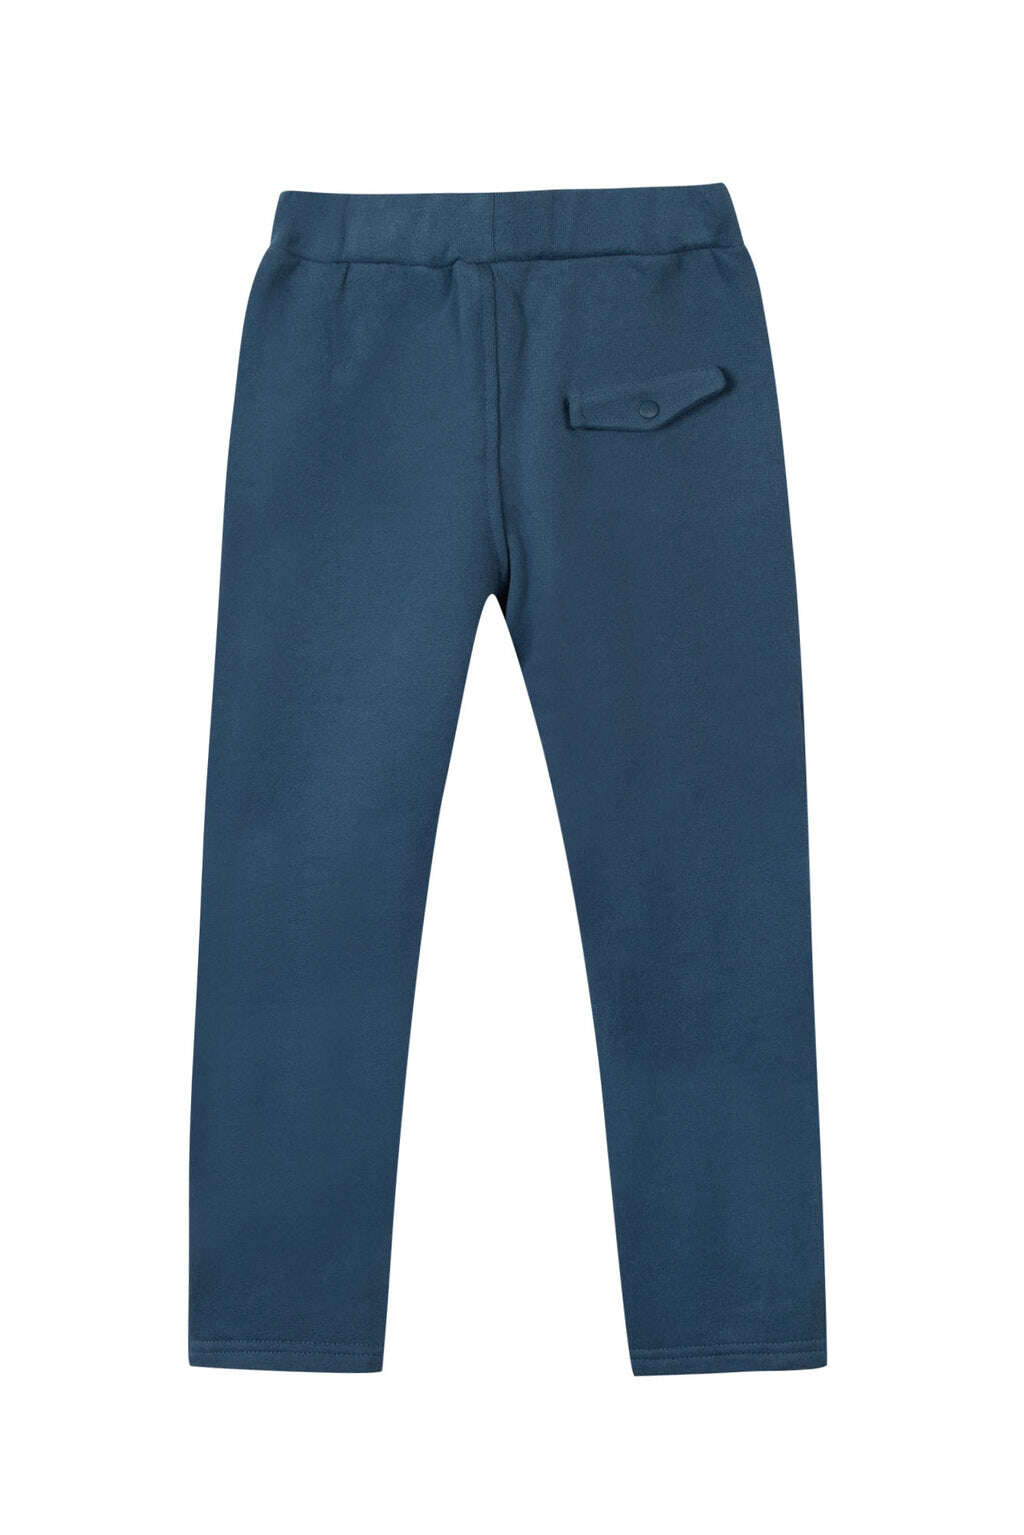 Pantalon - Bleu encre molleton